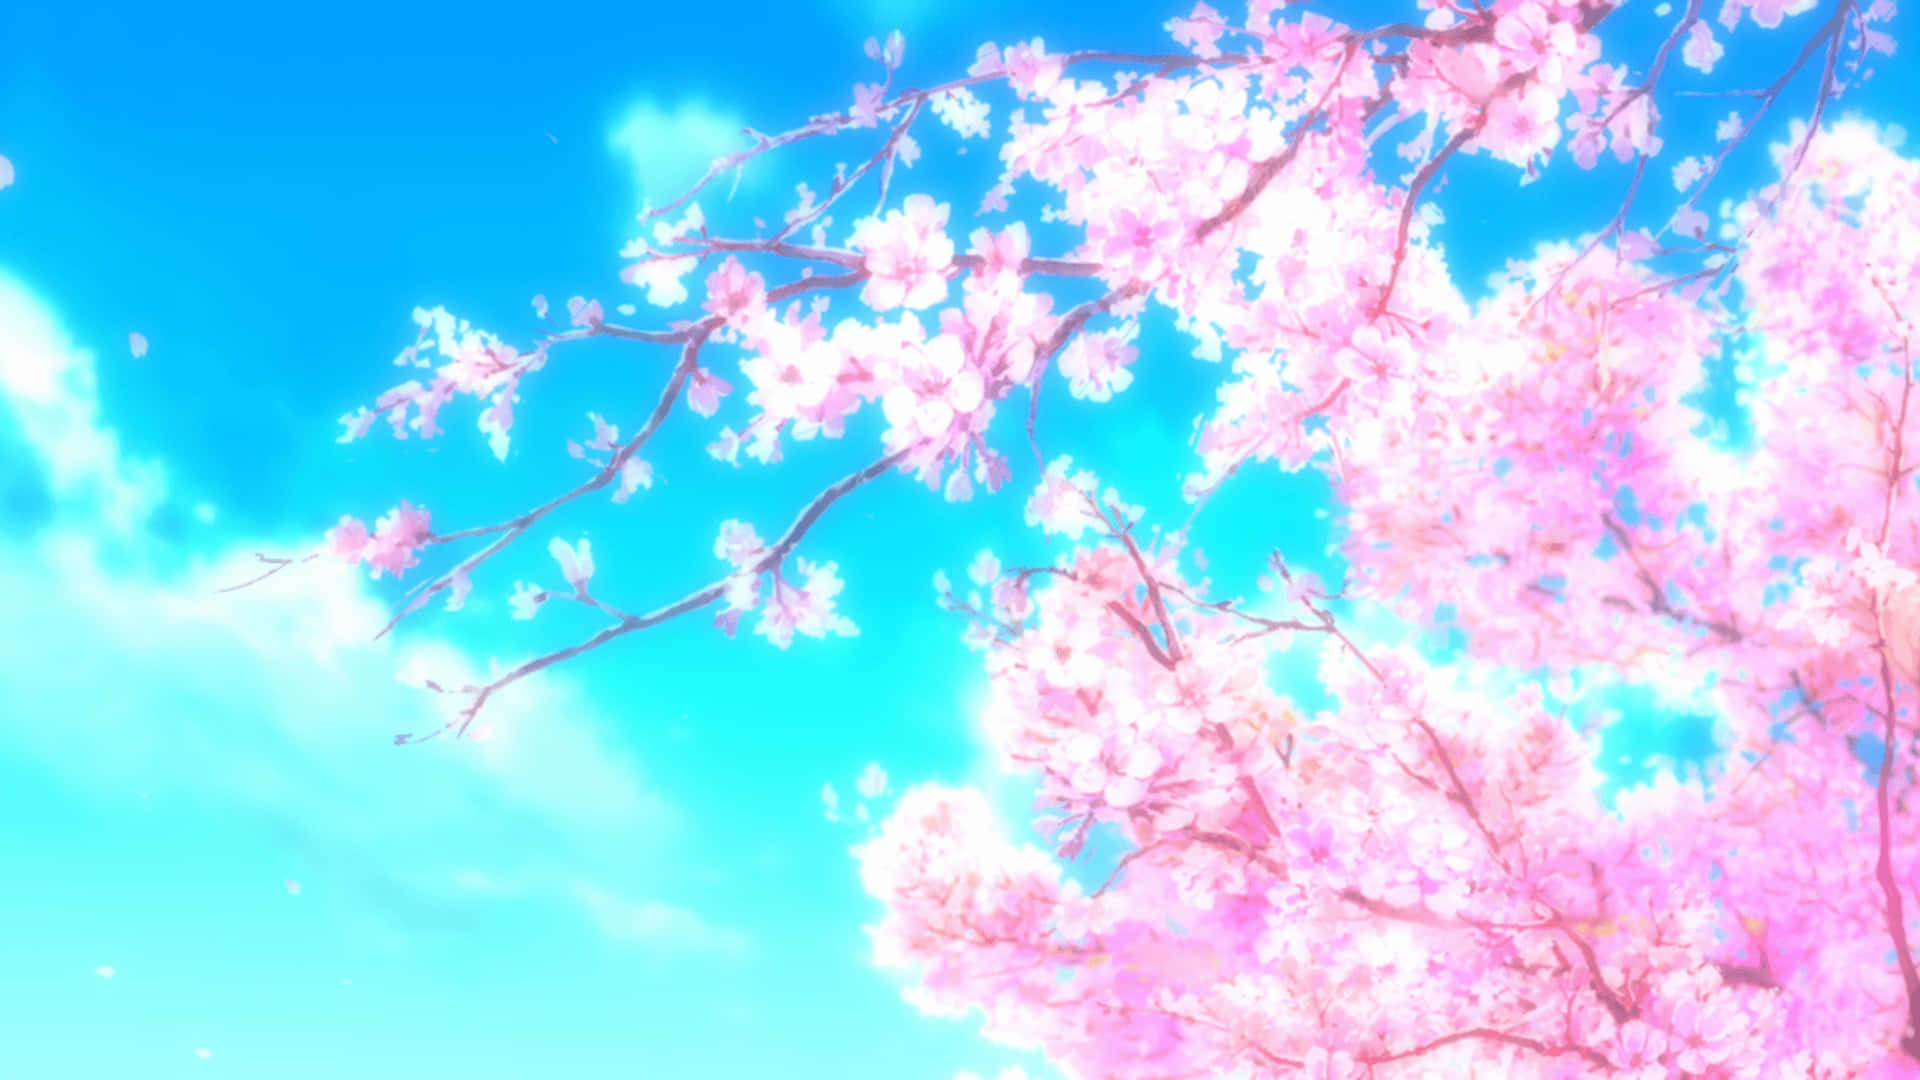 Increíblecielo Con Paisaje De Flores De Sakura En Estilo Anime. Fondo de pantalla